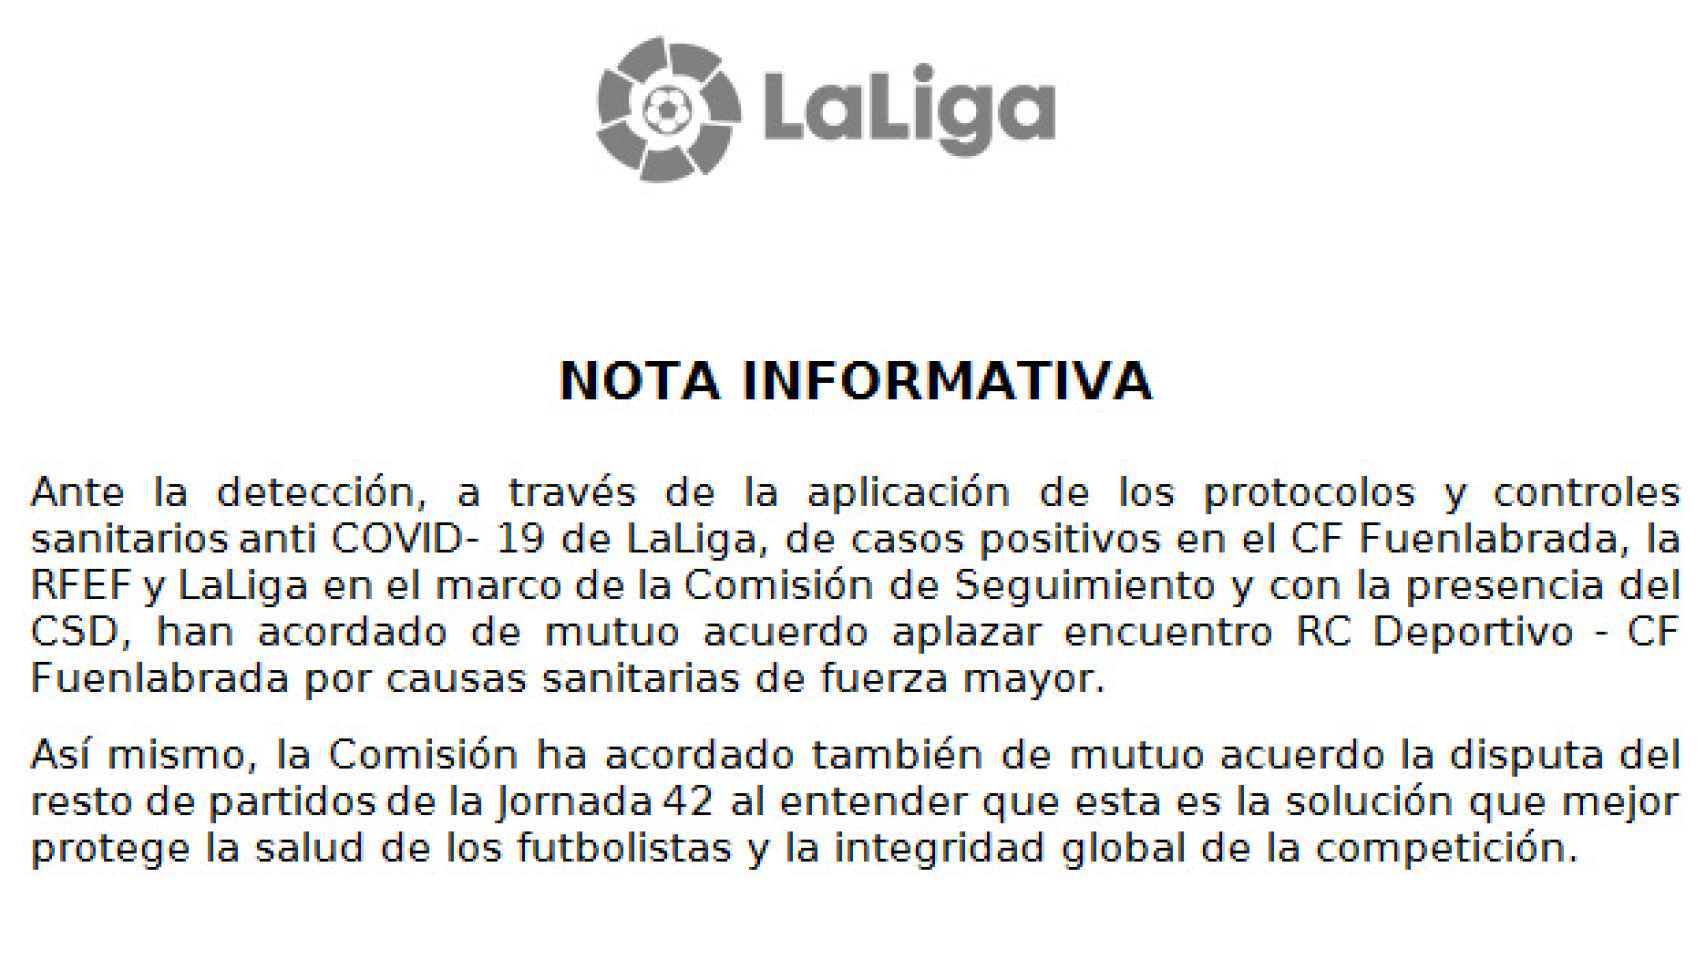 La nota de LaLiga anunciando la suspensión del partido